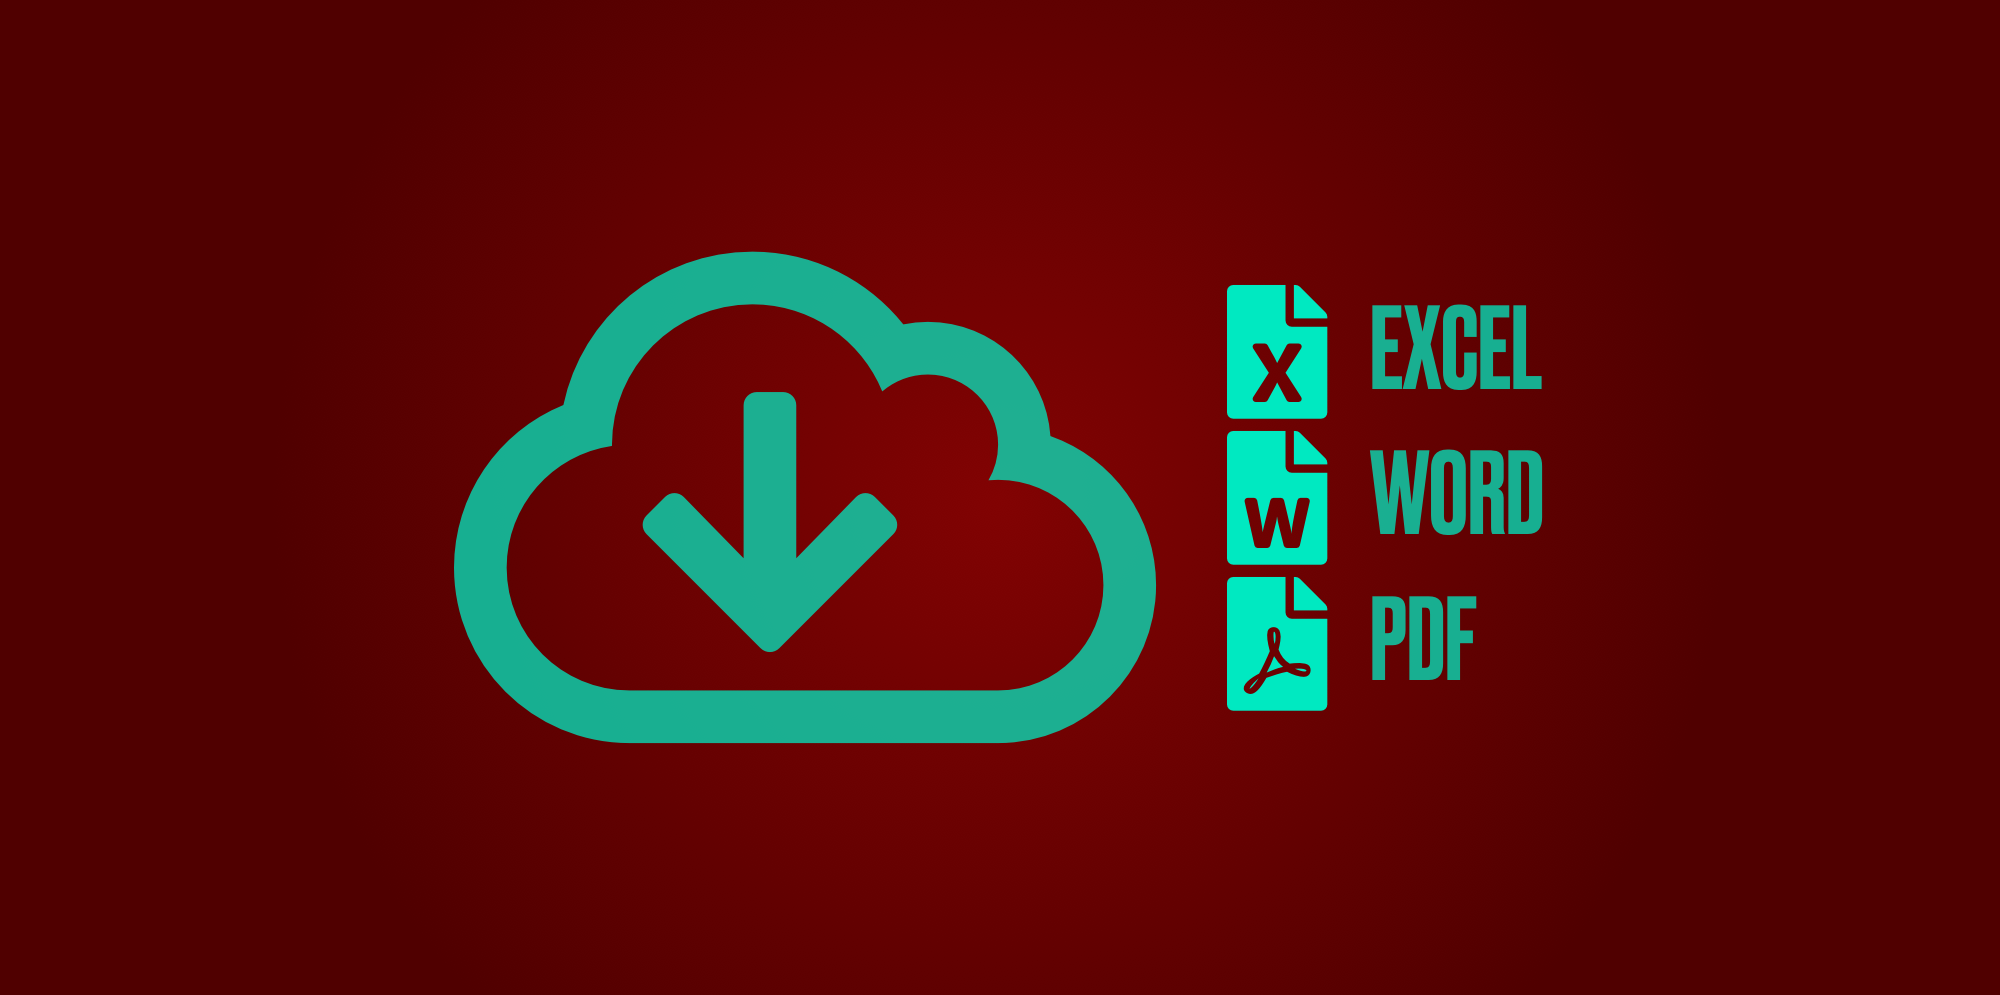 Icona Exportació de continguts en format Excel, Word i PDF